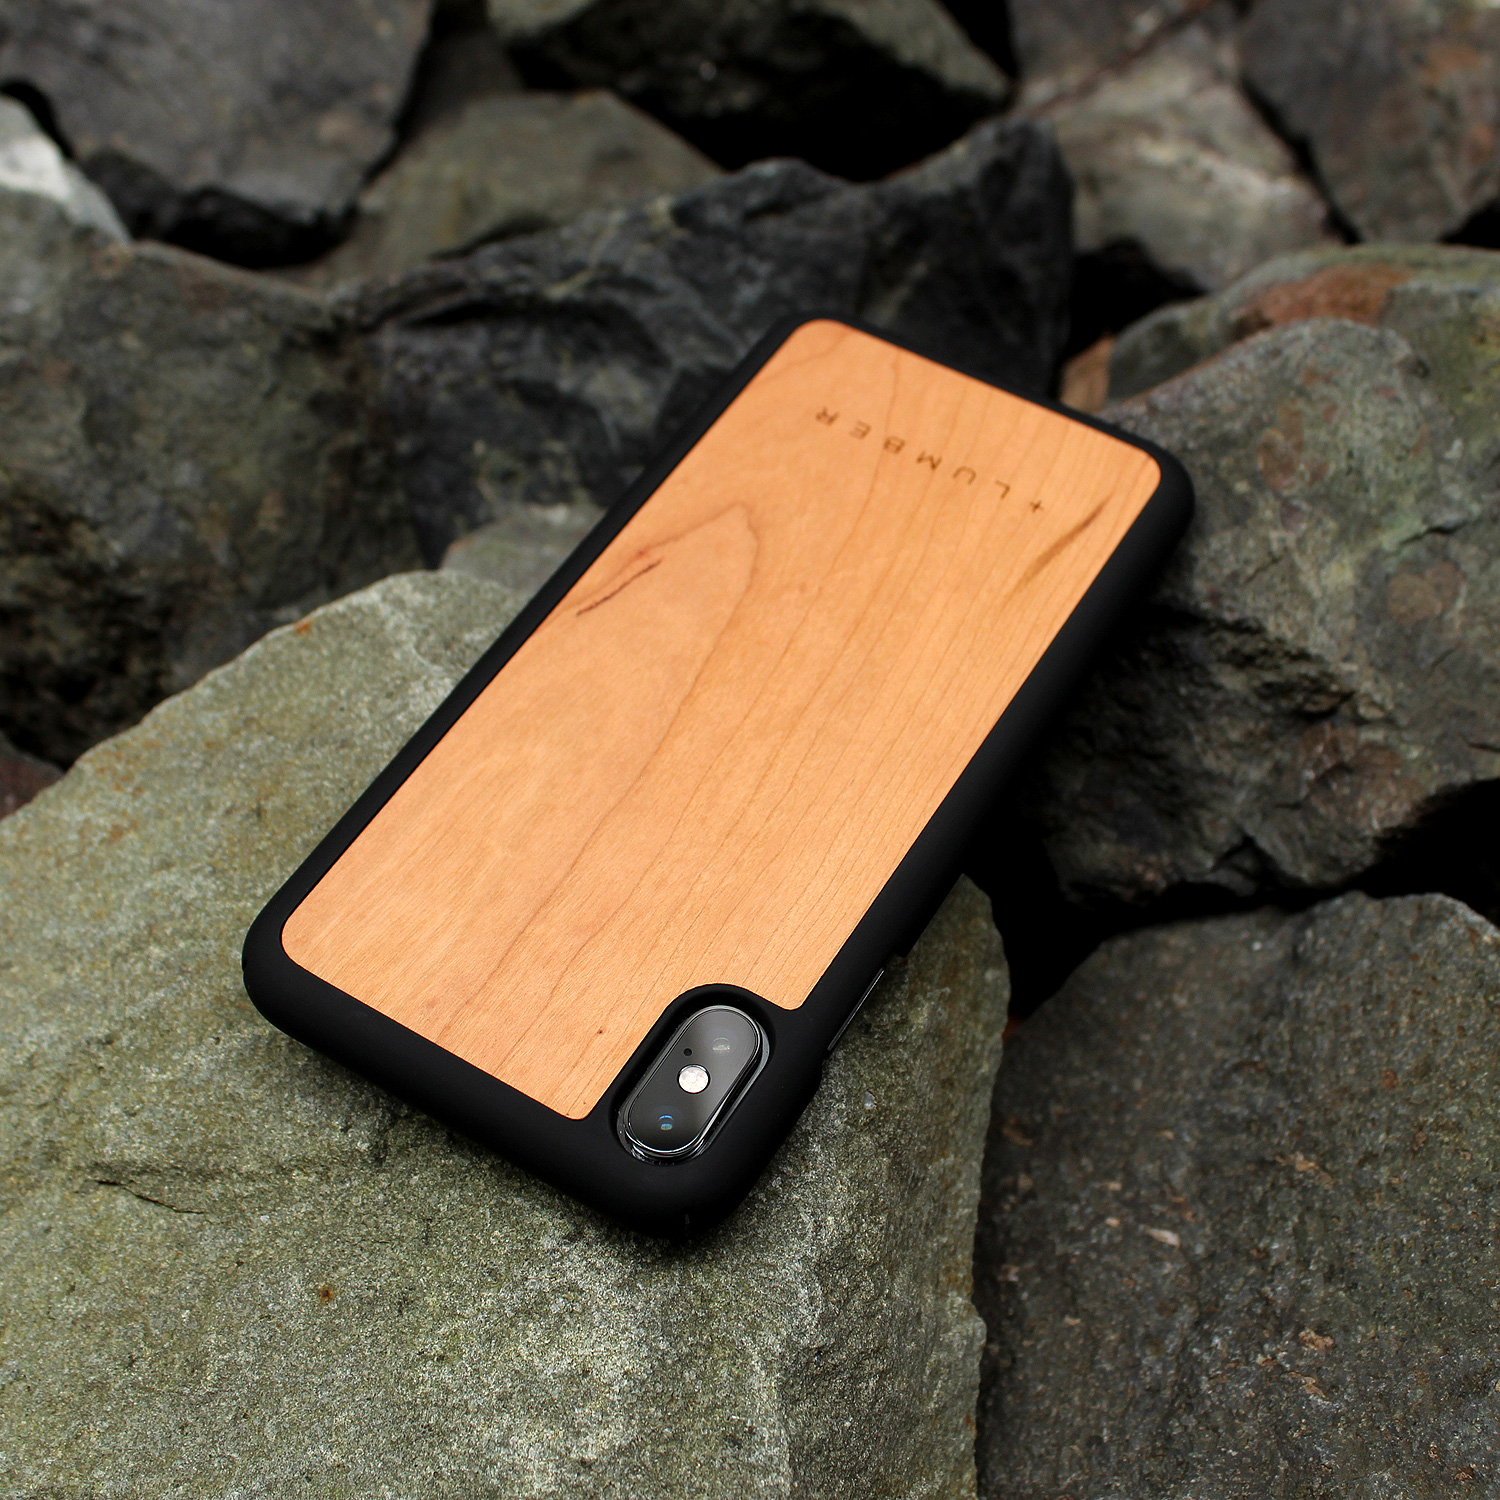 丈夫なハードケースと天然木を融合したiPhone XR専用木製ケース